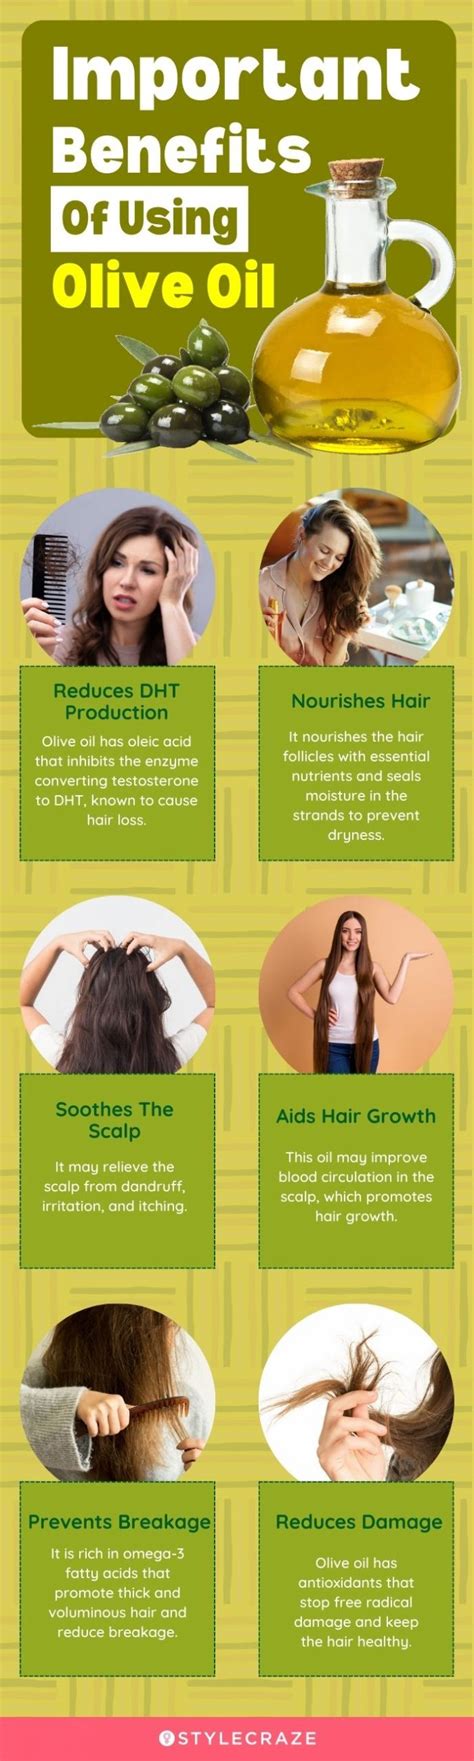 Does olive oil repair hair?